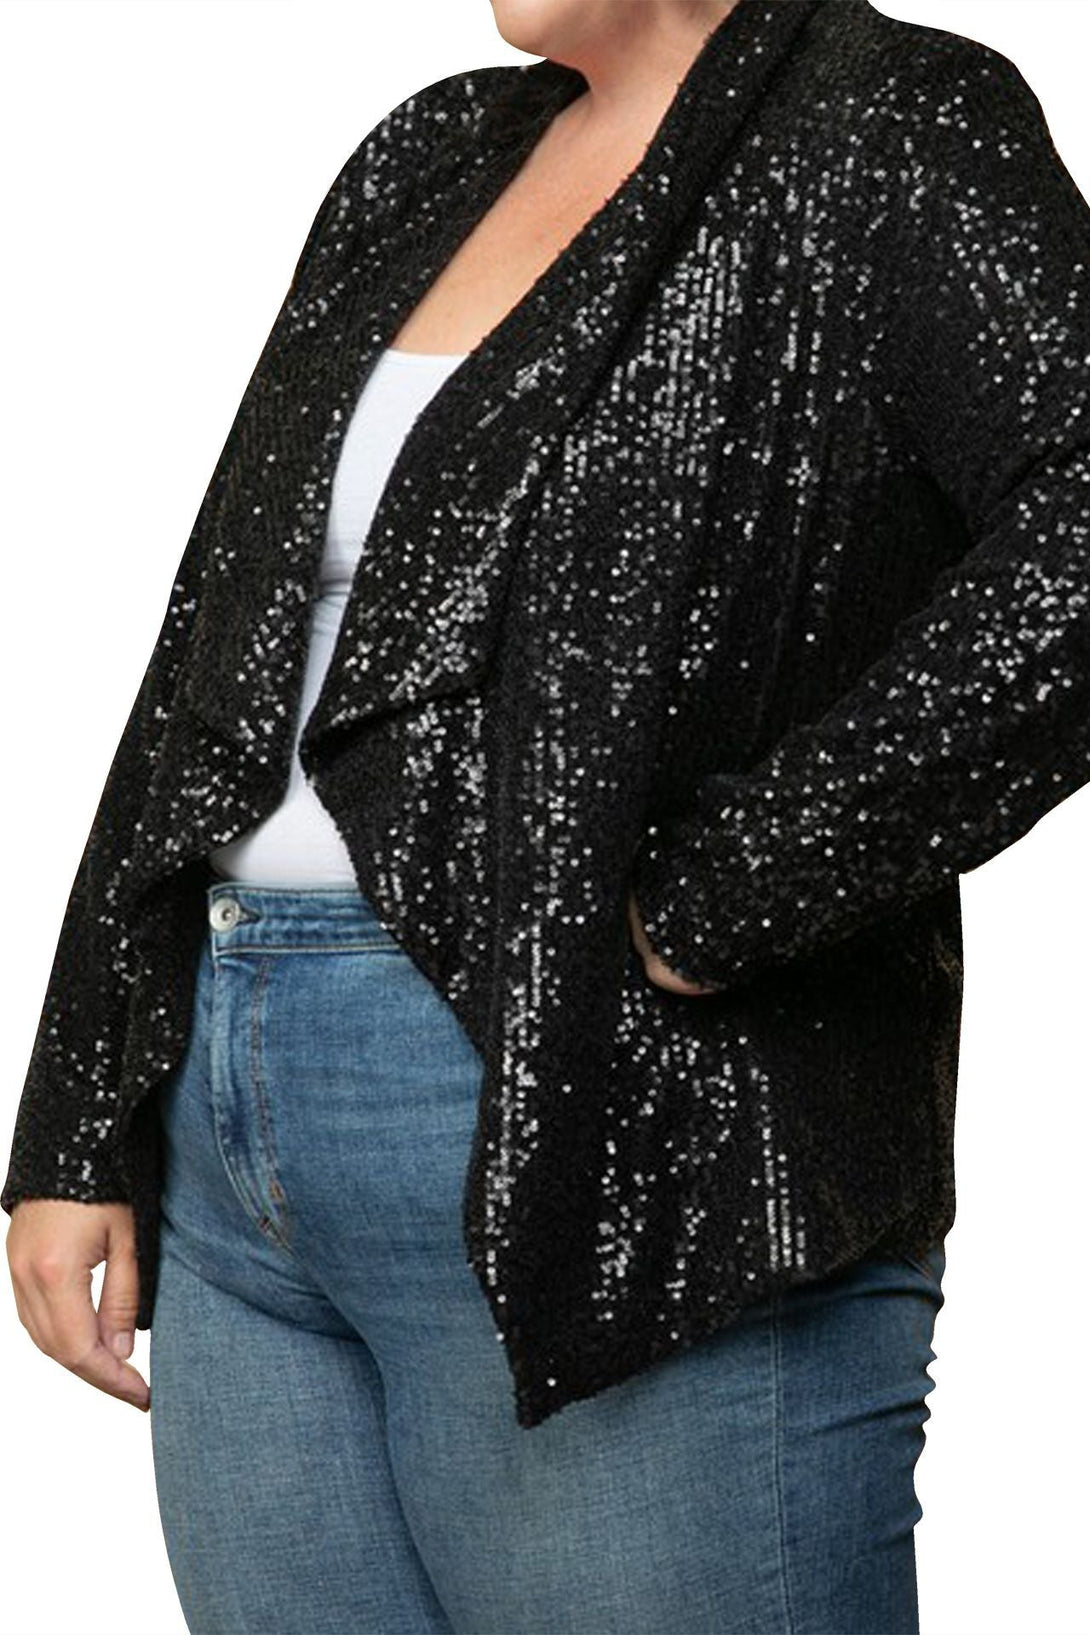 "Shahida Parides" "black sequin womens jacket" "black sequin jacket for women" "plus size womens sequin jacket"